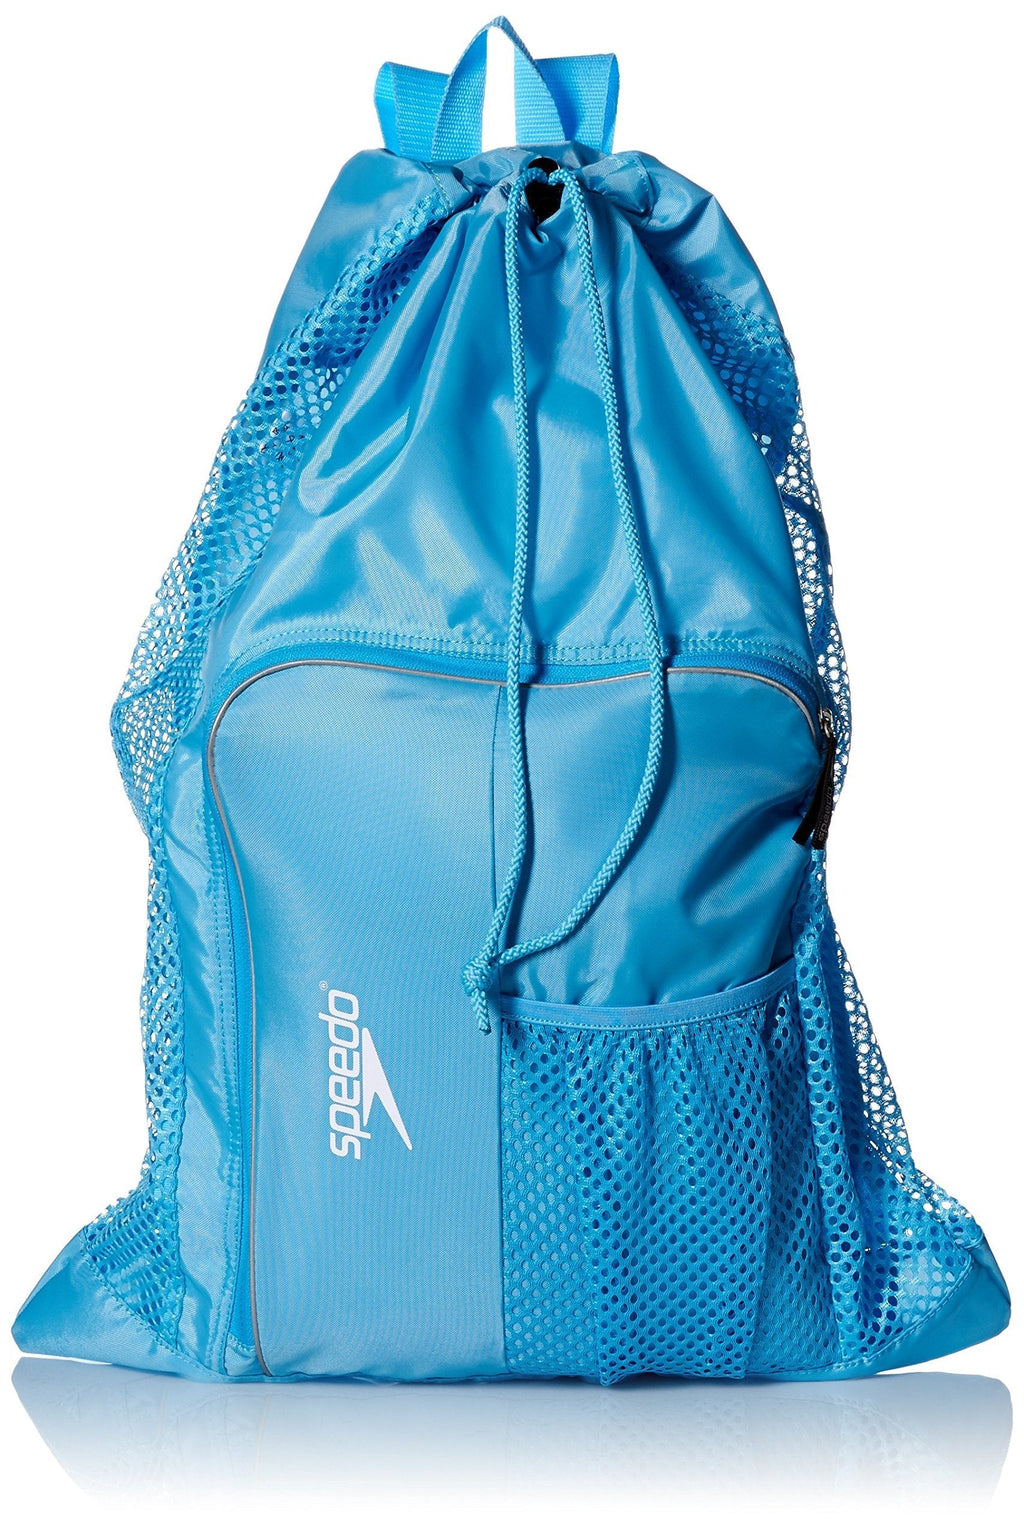 Speedo Unisex-Adult Deluxe Ventilator Mesh Equipment Bag Blue Grotto - BeesActive Australia